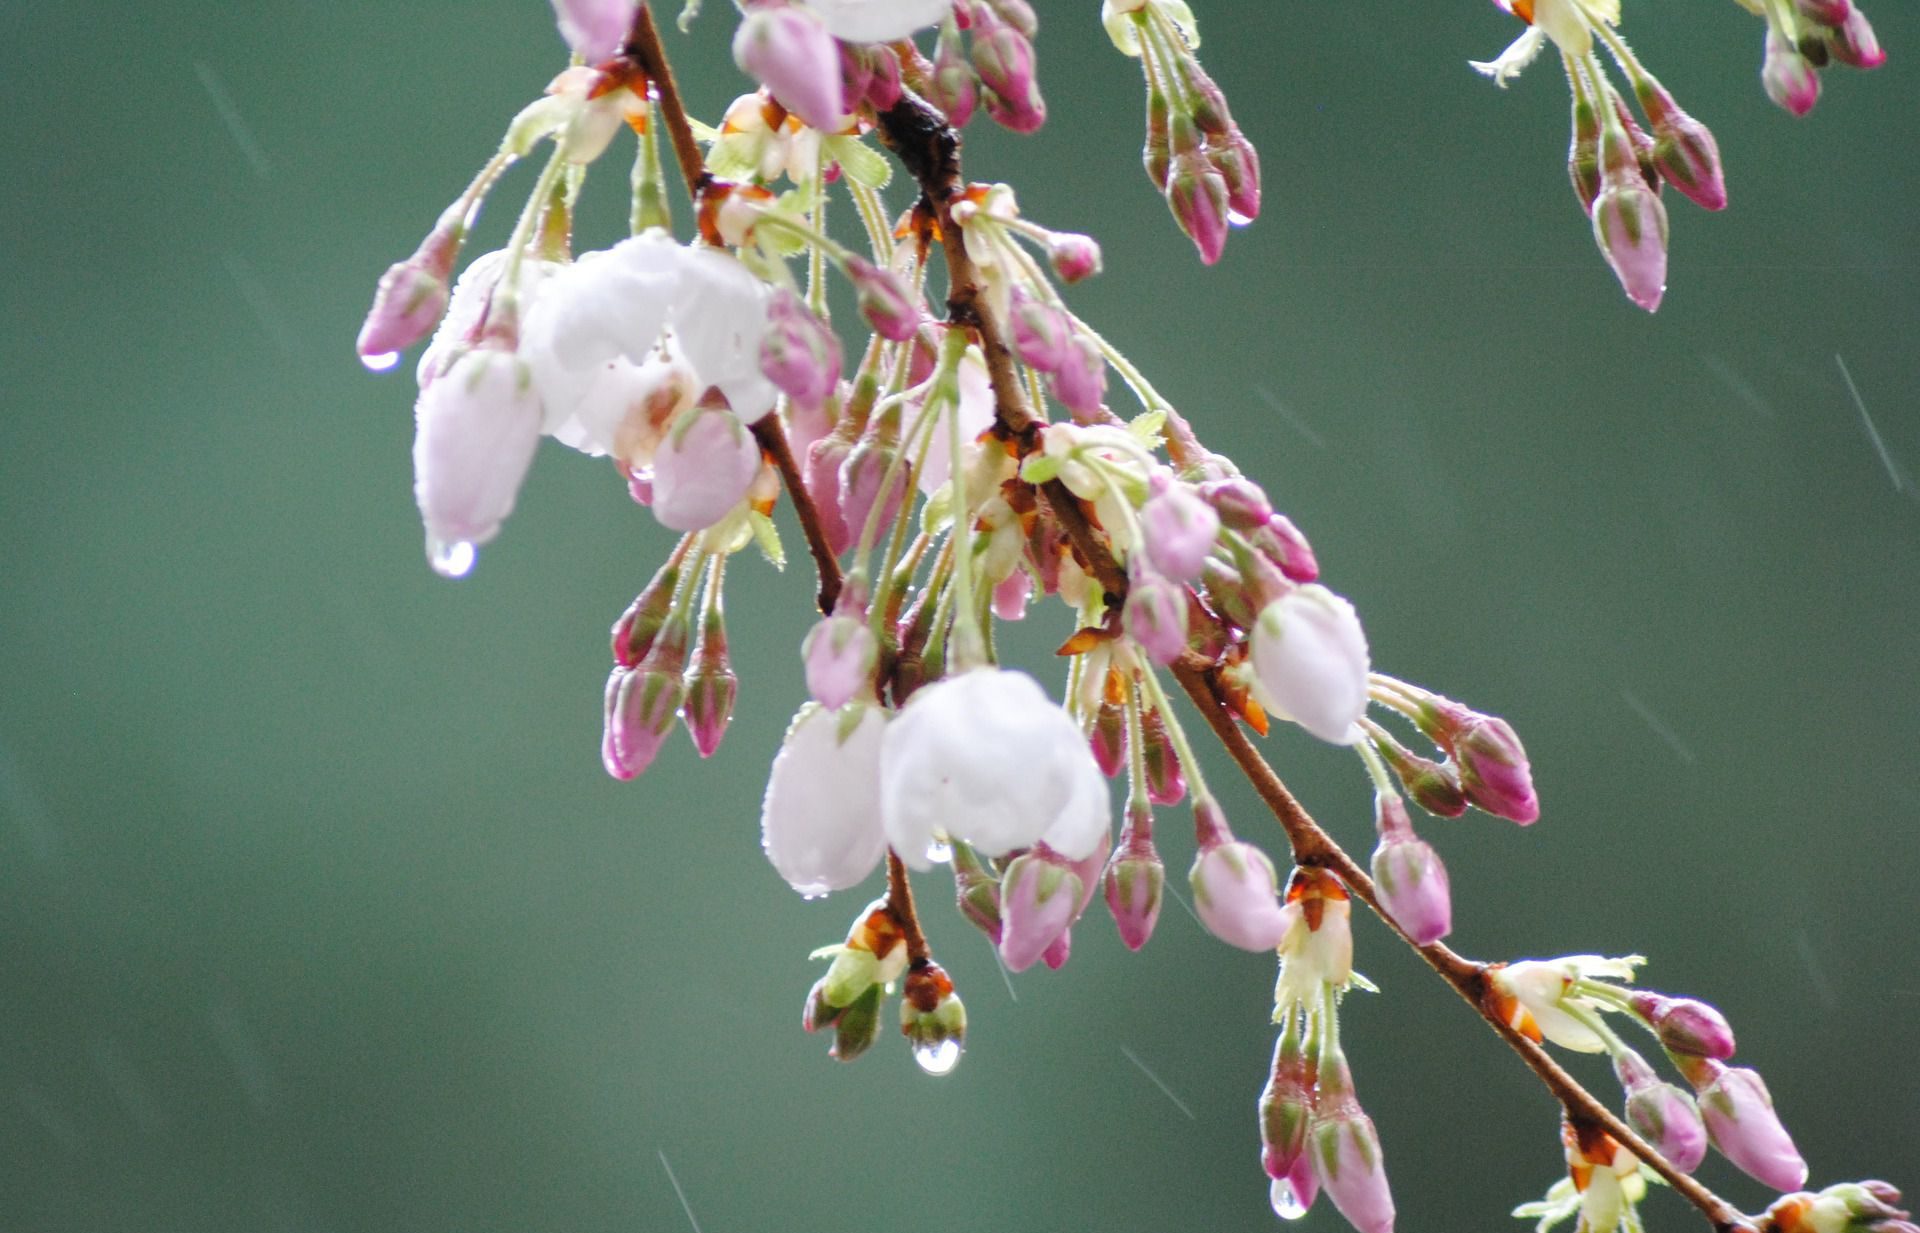 雨の季語 春編 言葉の意味や使い方 春の雨の言葉を一覧にまとめました あめつちコトノハ